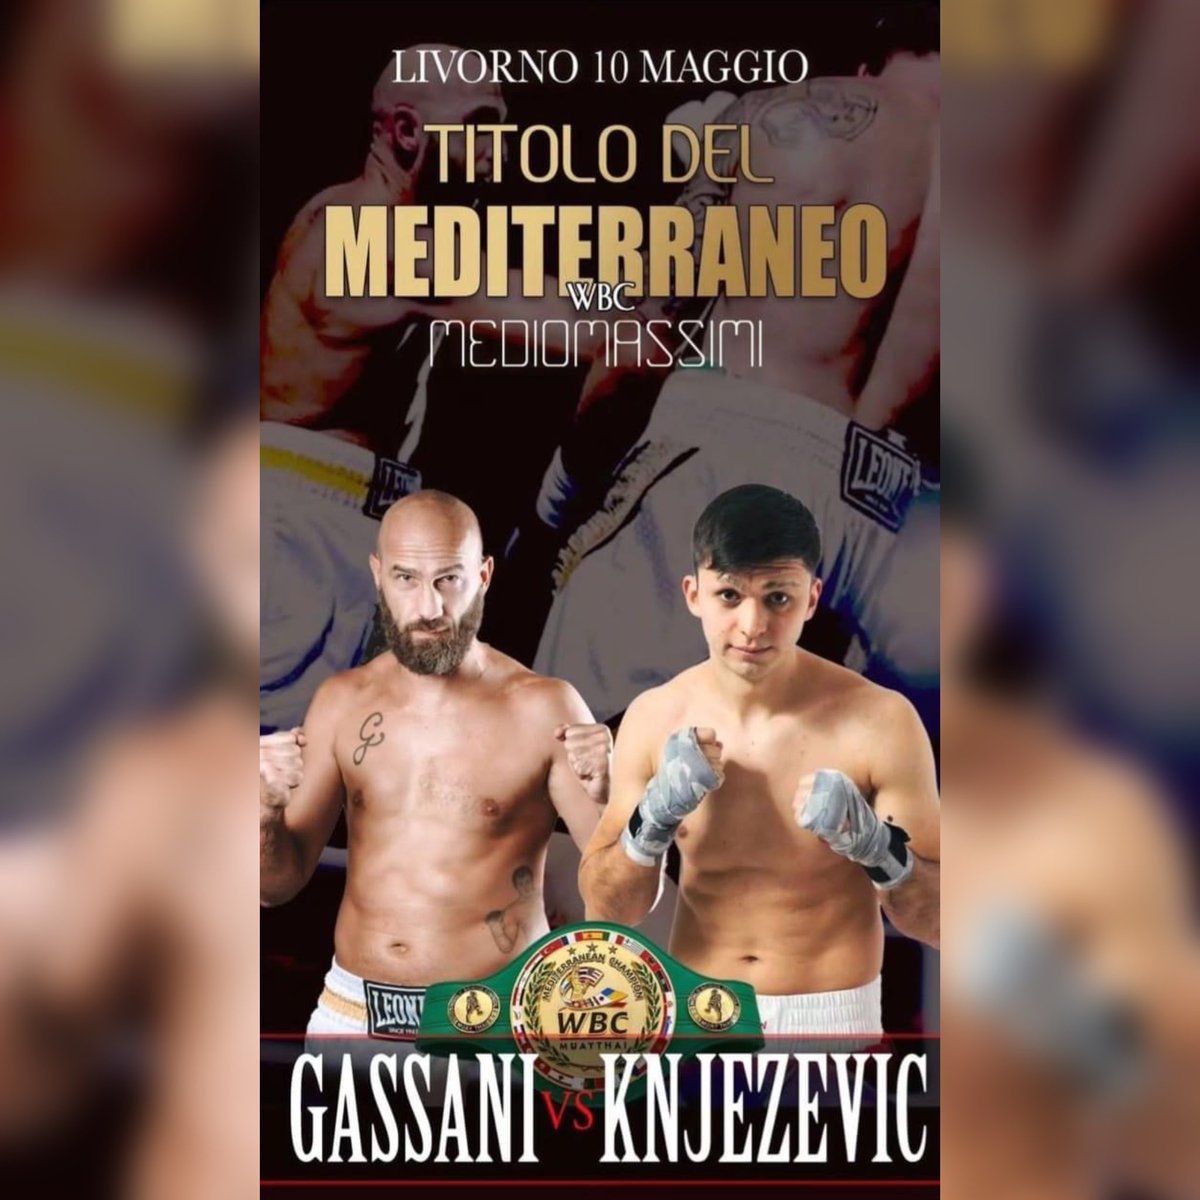 🏆 🚨🚨🚨#Fightnews 🥊 🏆Titolo mediterraneo Mediomassimi WBC 🥊 il 10 maggio PV a Livorno il nostro Federico Gassani 🇮🇹 sfiderà il croato Bruno Knjezevic 🇭🇷 🥊 Evento Promo Boxe Italia #Euro #Boxing #Boxer #Pugilato #FightNews #Fighter #Match #Title #belt #boxingmatch…